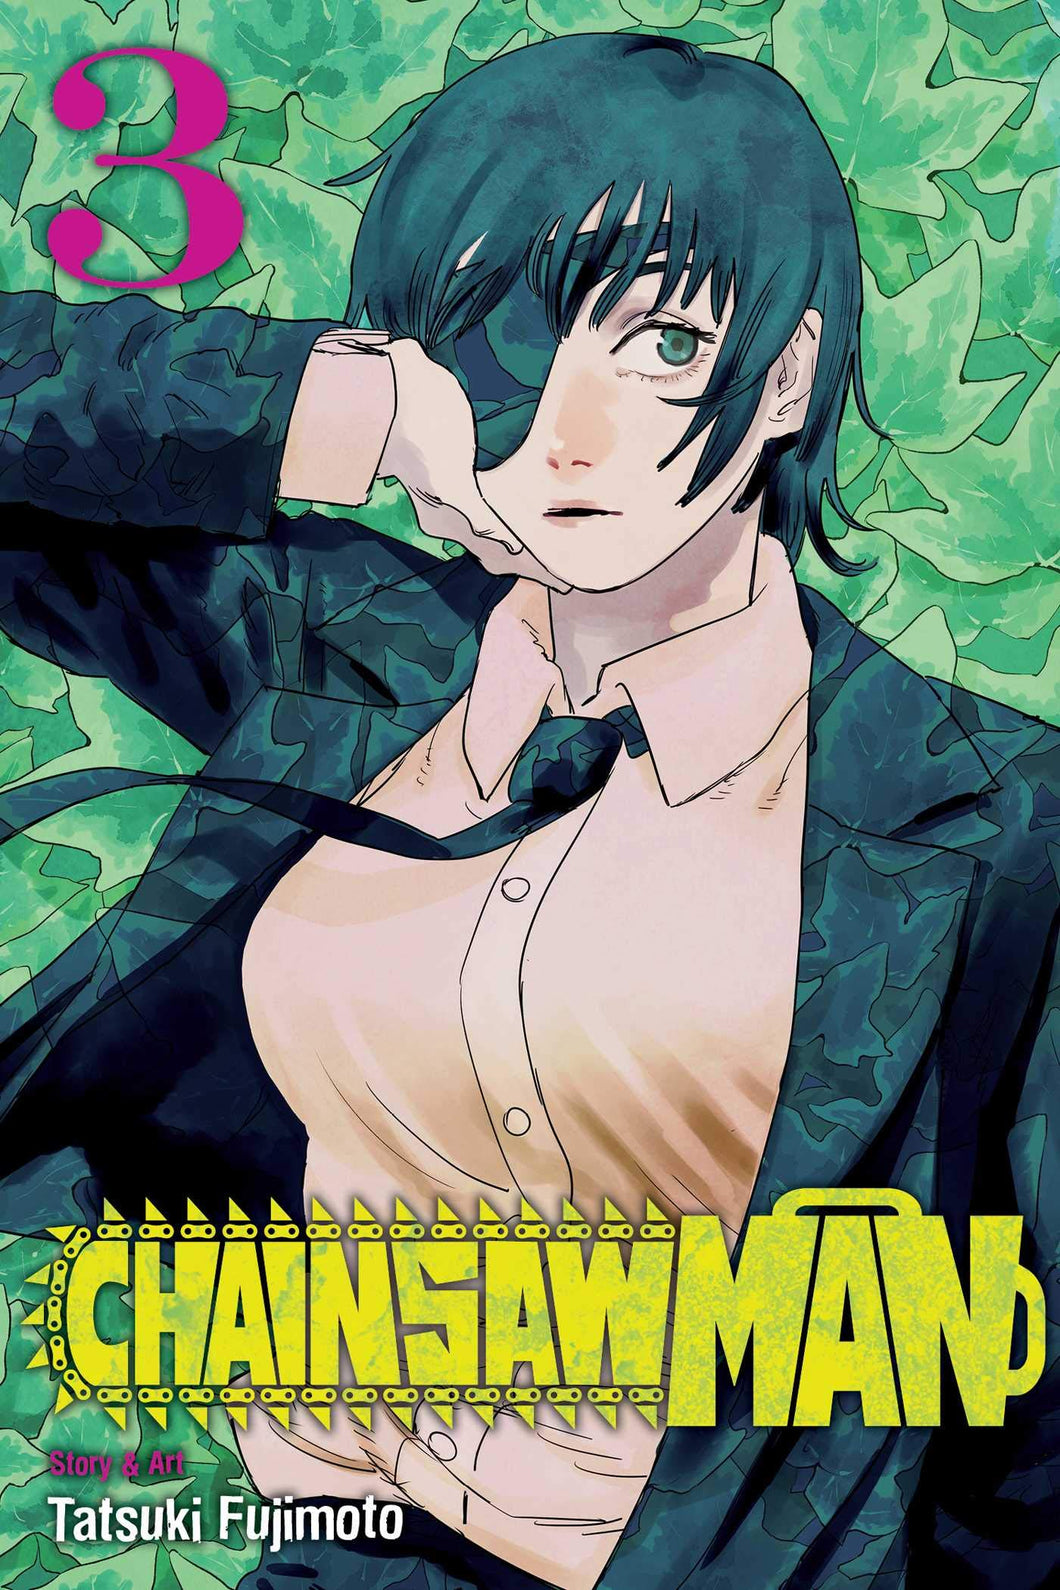 Chainsaw Man Volume 3